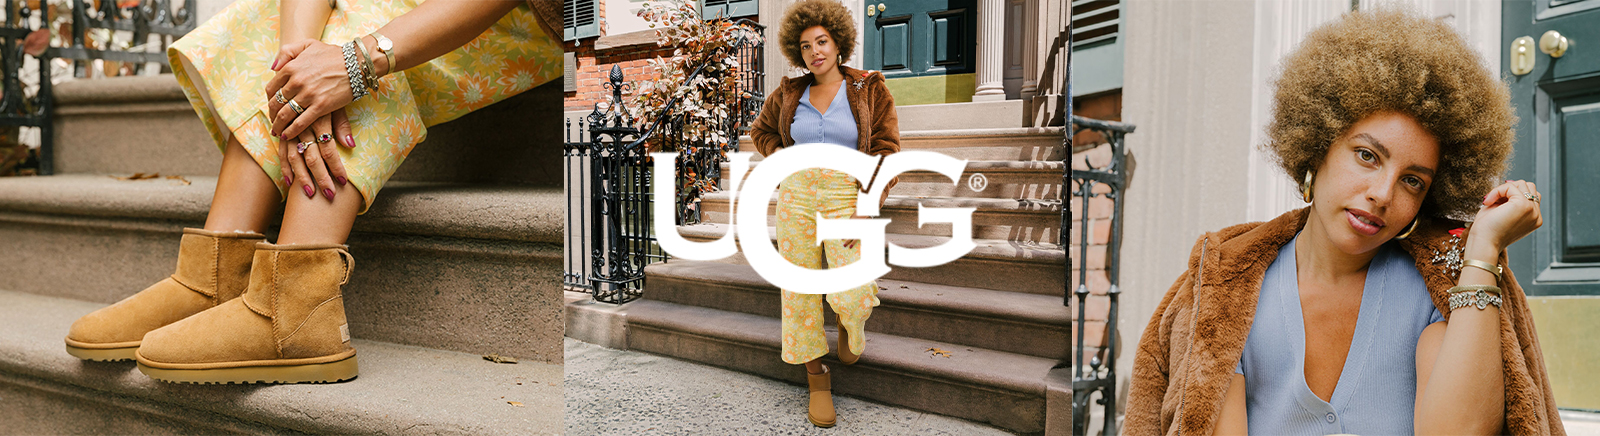 UGG Plateau-Sandalen für Damen im Online-Shop von GISY kaufen